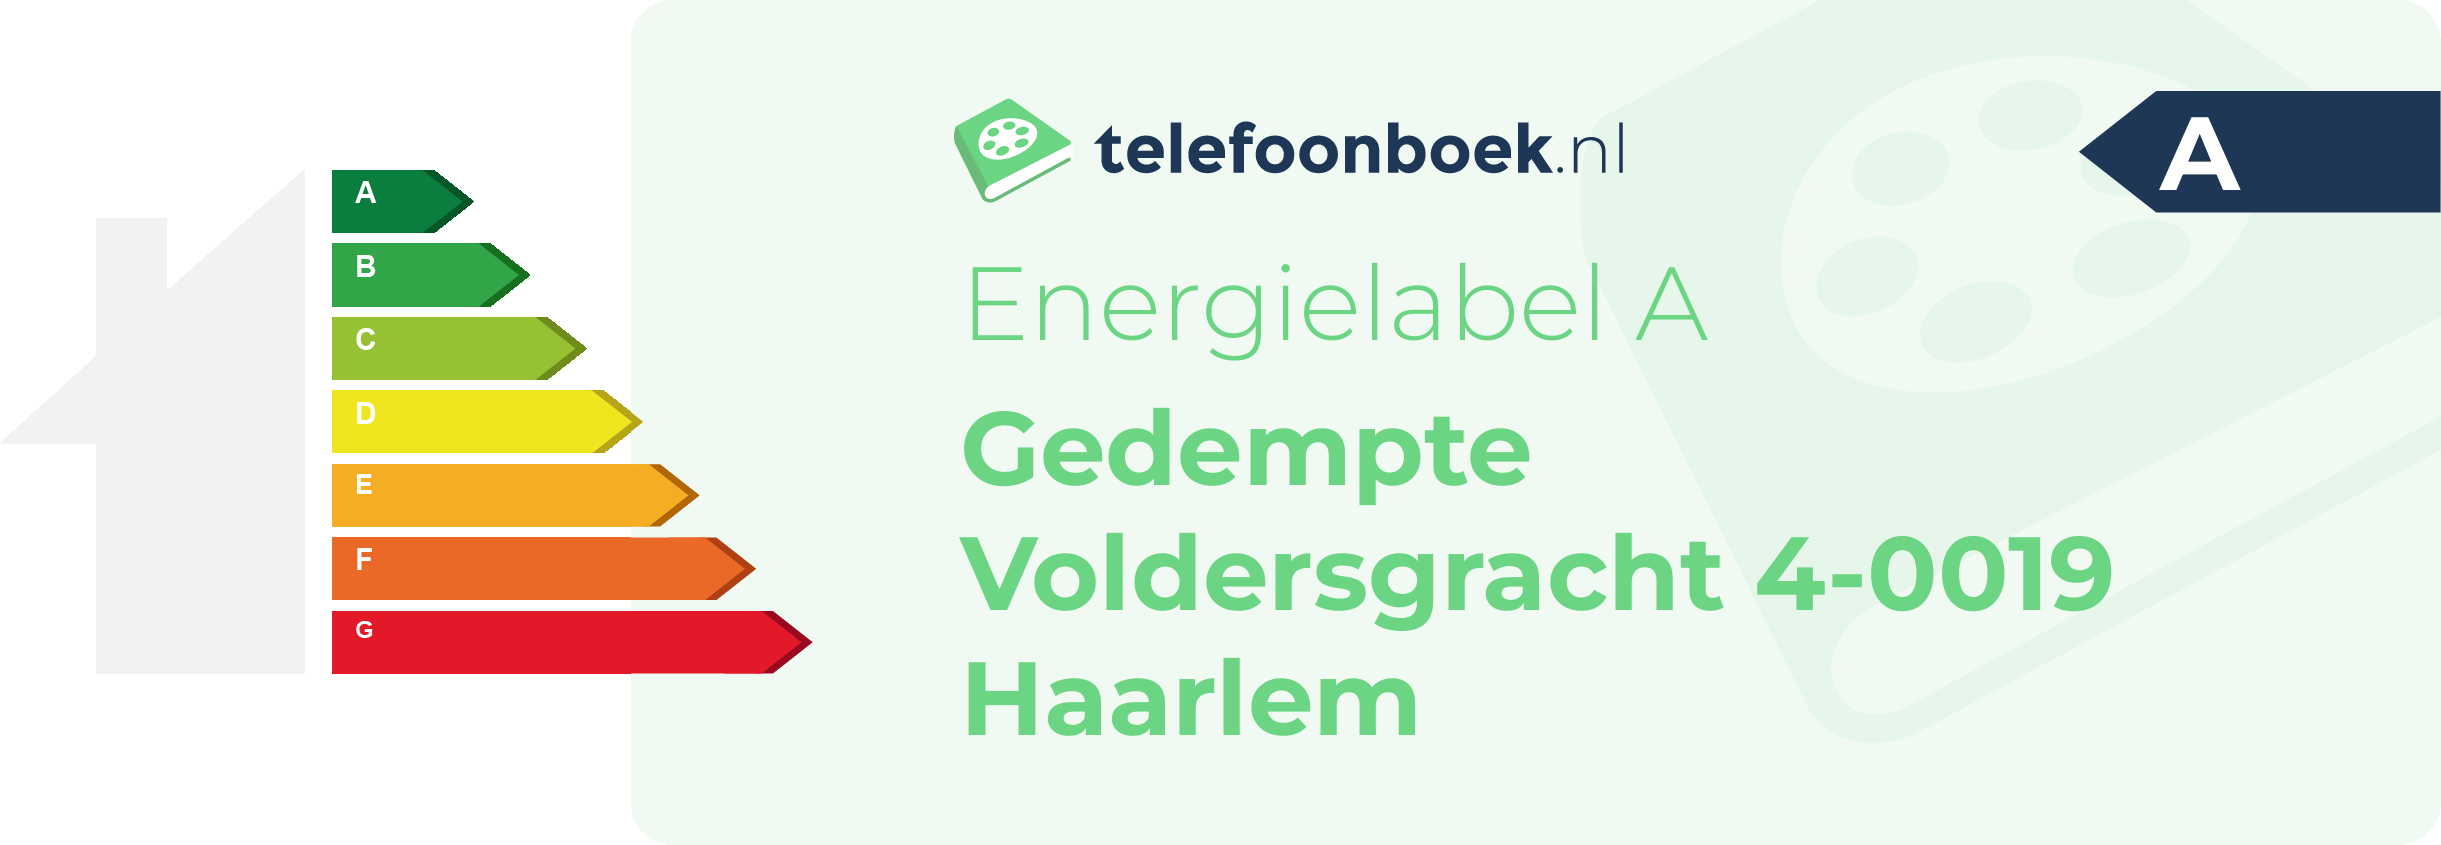 Energielabel Gedempte Voldersgracht 4-0019 Haarlem